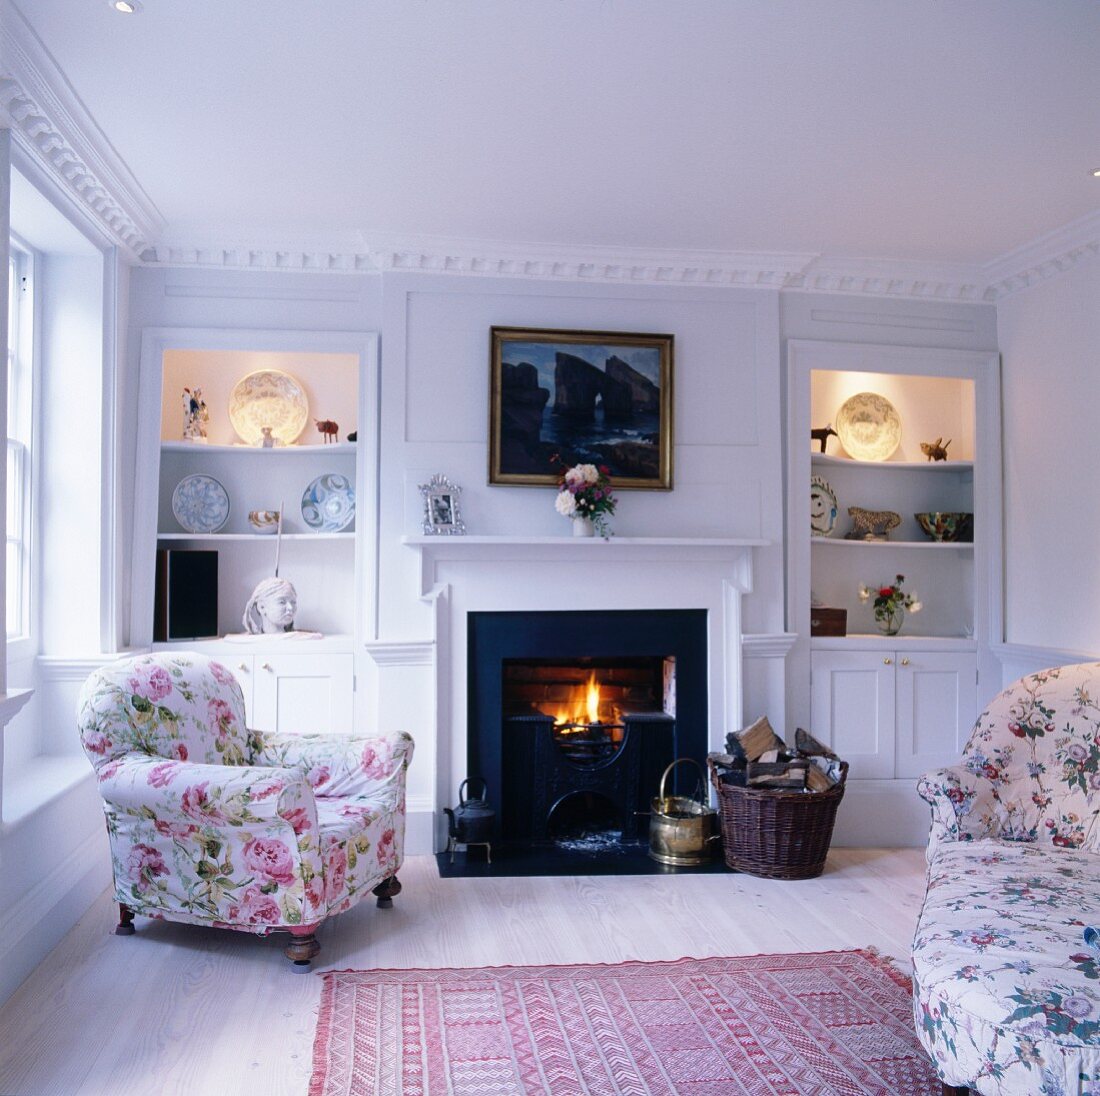 Wohnzimmer im romantischen Landhausstil mit floral gemusterten Polstermöbeln und Kaminfeuer zwischen beleuchteten Einbauregalen